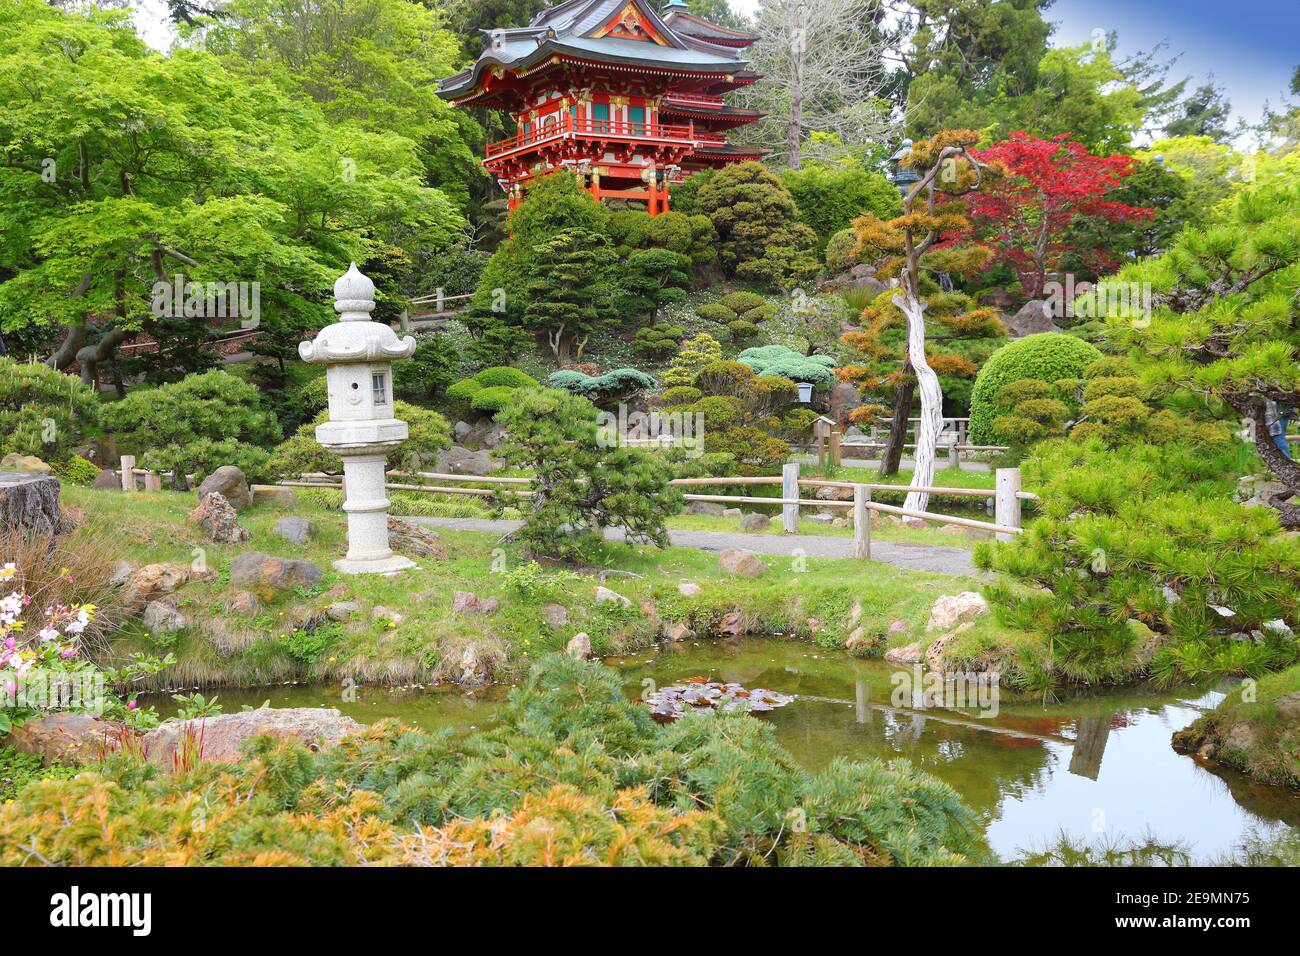 San Francisco - Japanese Tea Garden in Golden Gate Park. Stock Photo